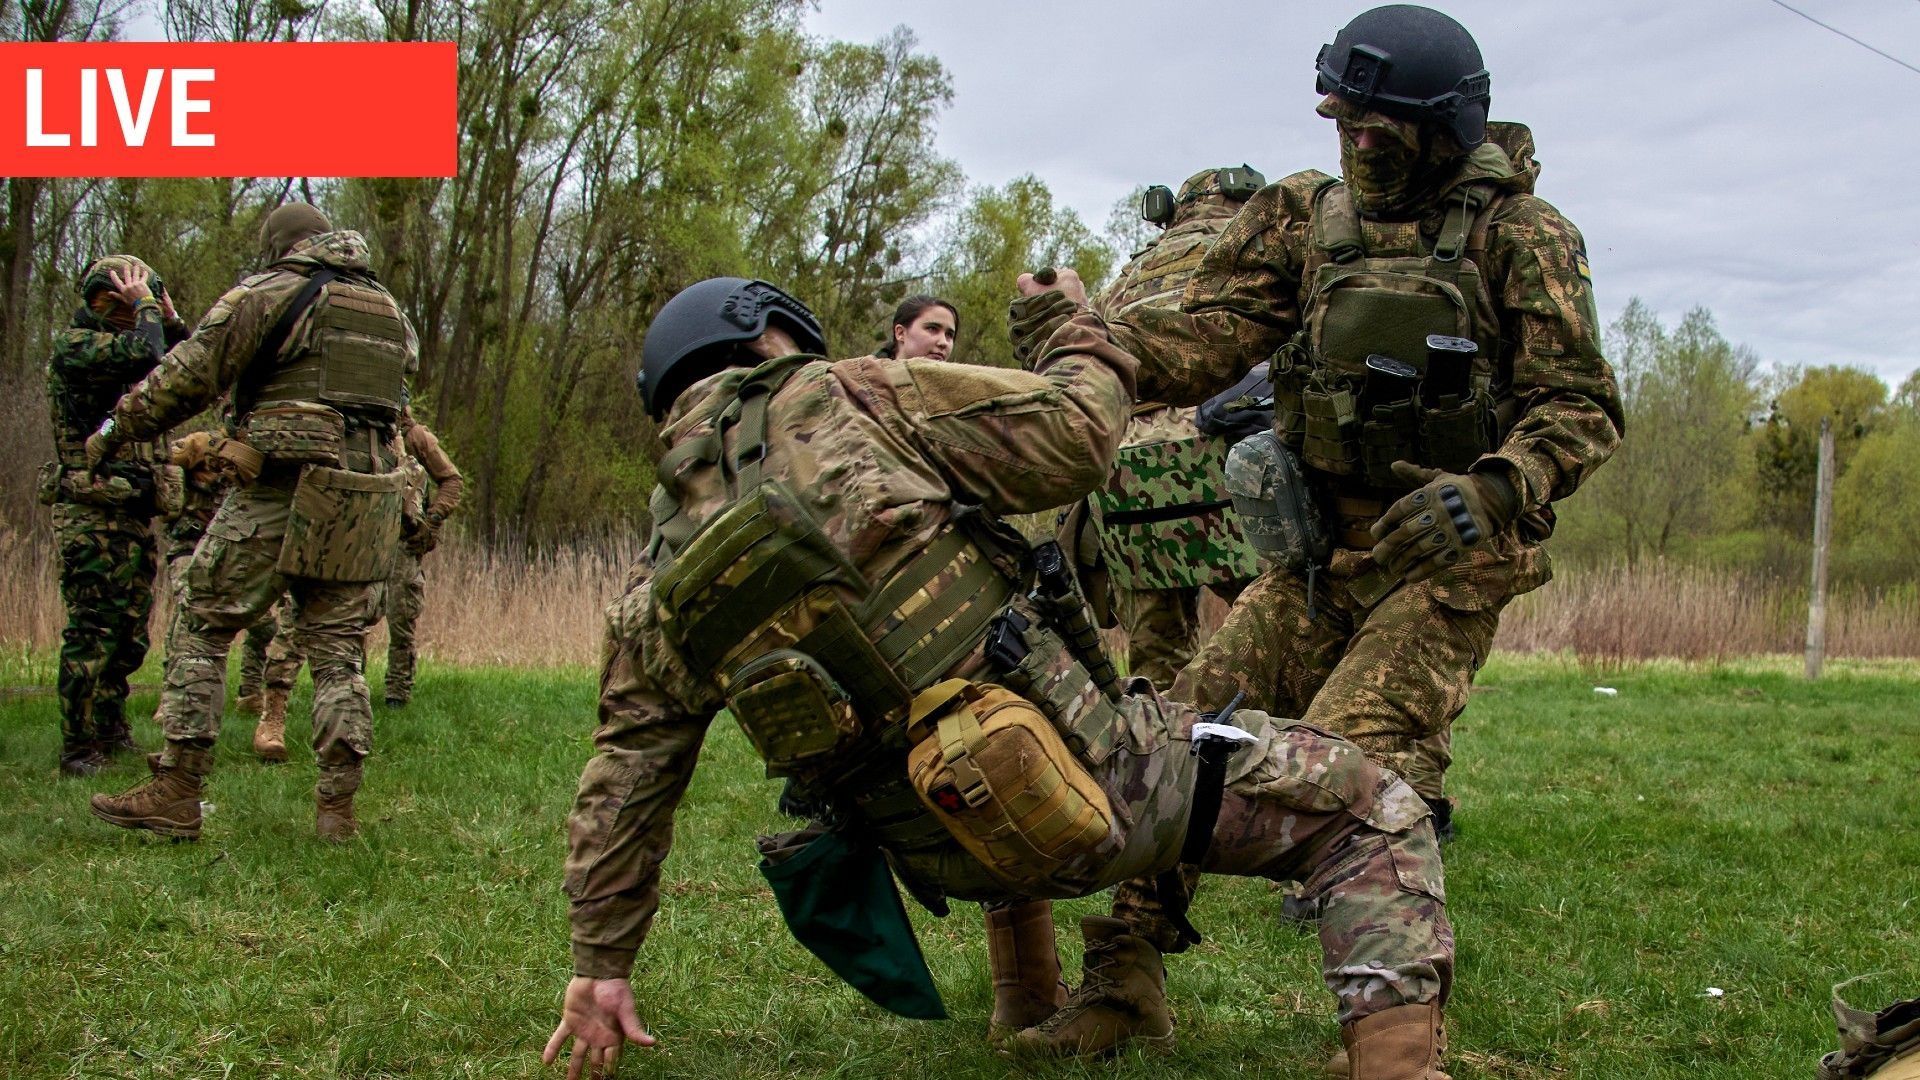 Des membres de la nouvelle brigade "Spartan" participent à un entraînement militaire sur un champ de tir près de Kharkiv, dans le nord-est de l'Ukraine, le 20 avril 2023.